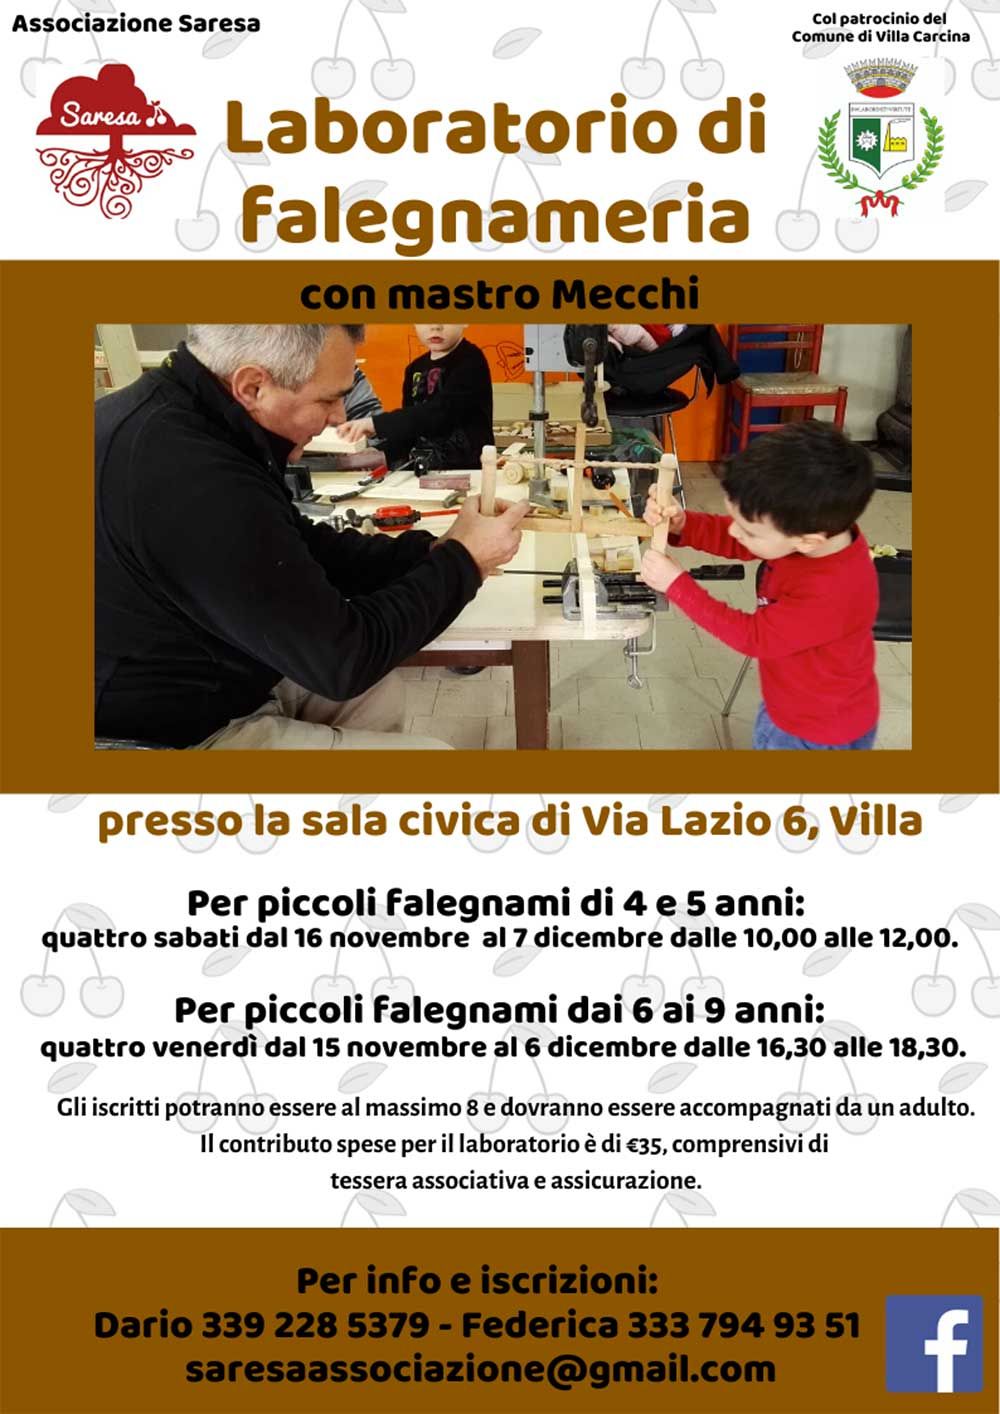 laboratorio-falegnameria-saresa-villa-carcina-2019